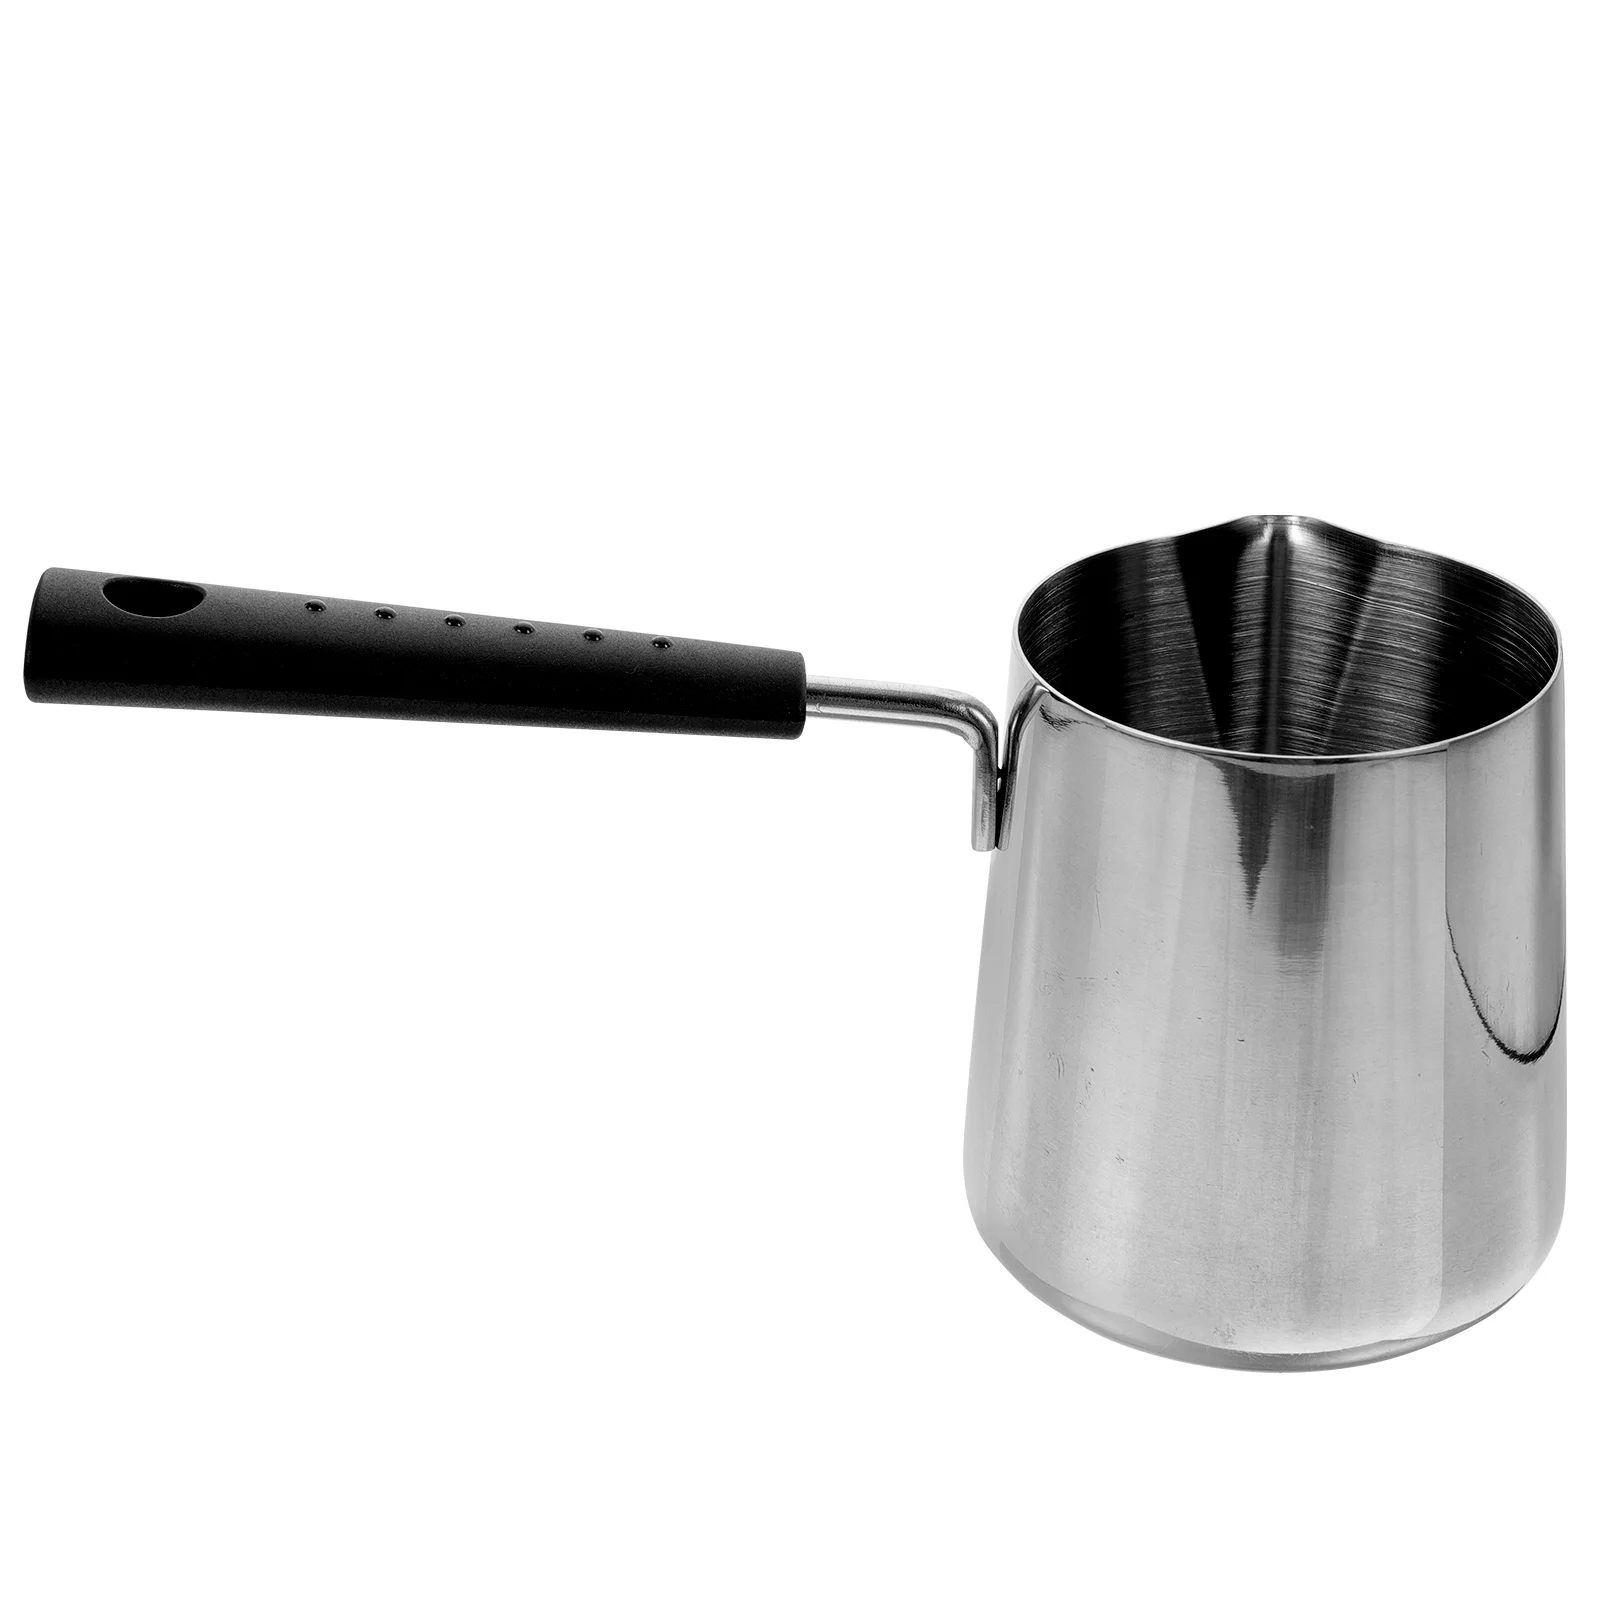 

Baking Pan Sauce Pour Spout Mini Heater Saucepan Pot Small Pots Cooking Stainless Steel Pans Stove Top Soup Oil Handle Ceramic